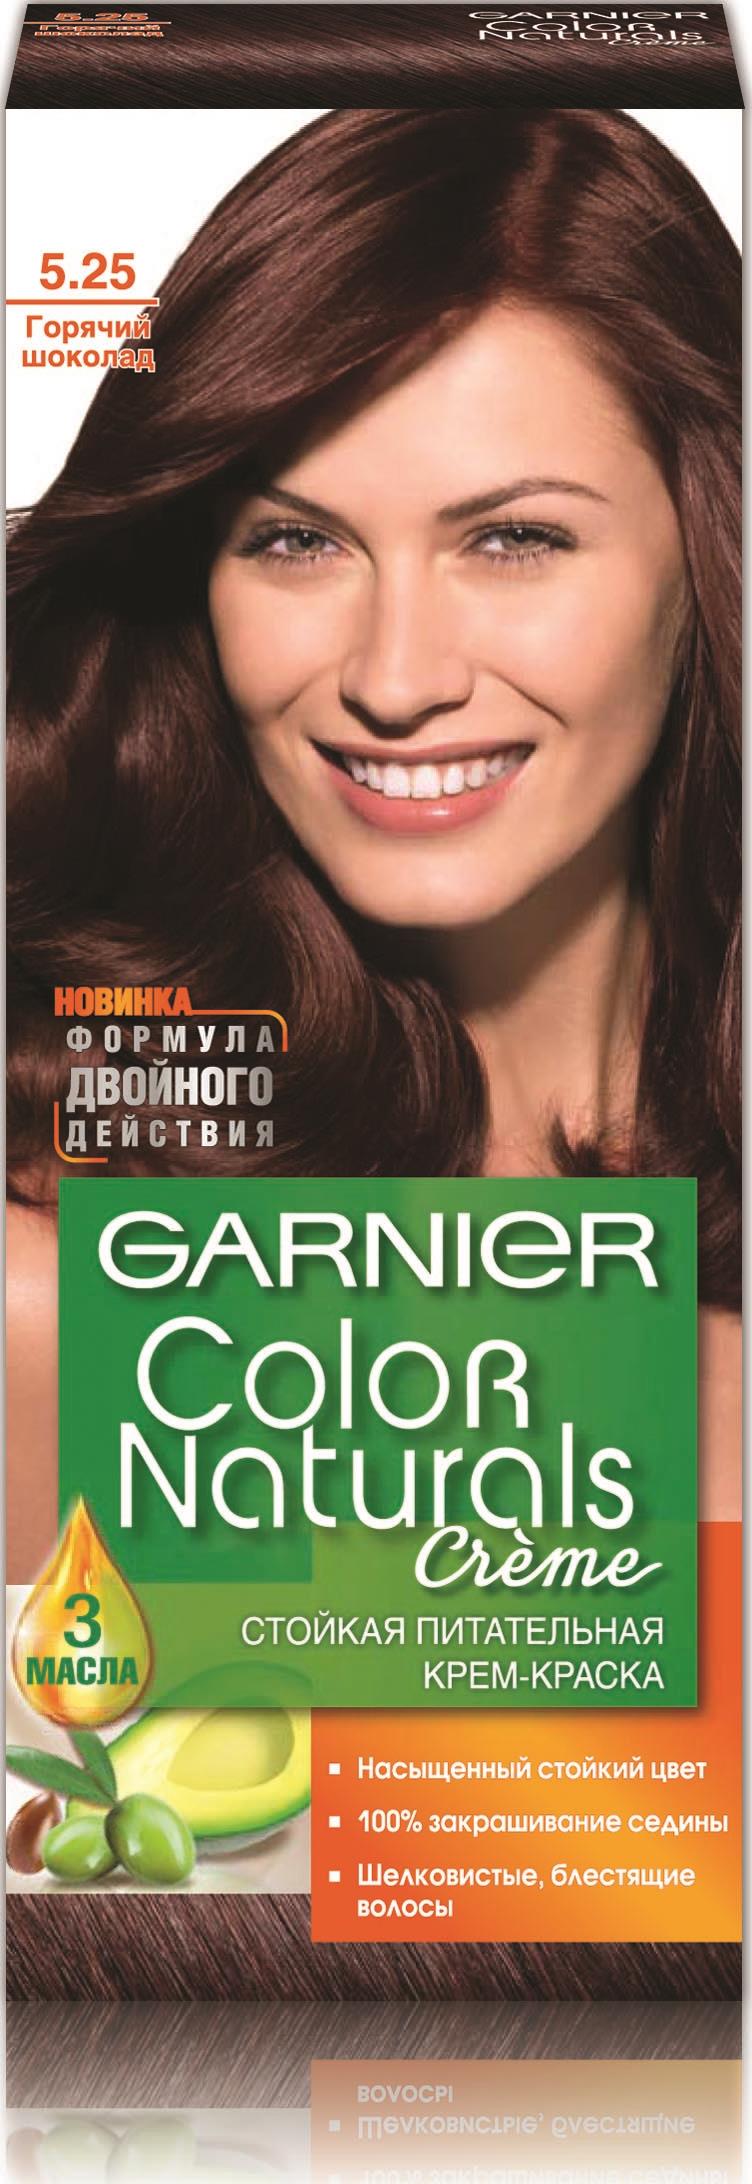 Краска Garnier 5.25 горячий шоколад